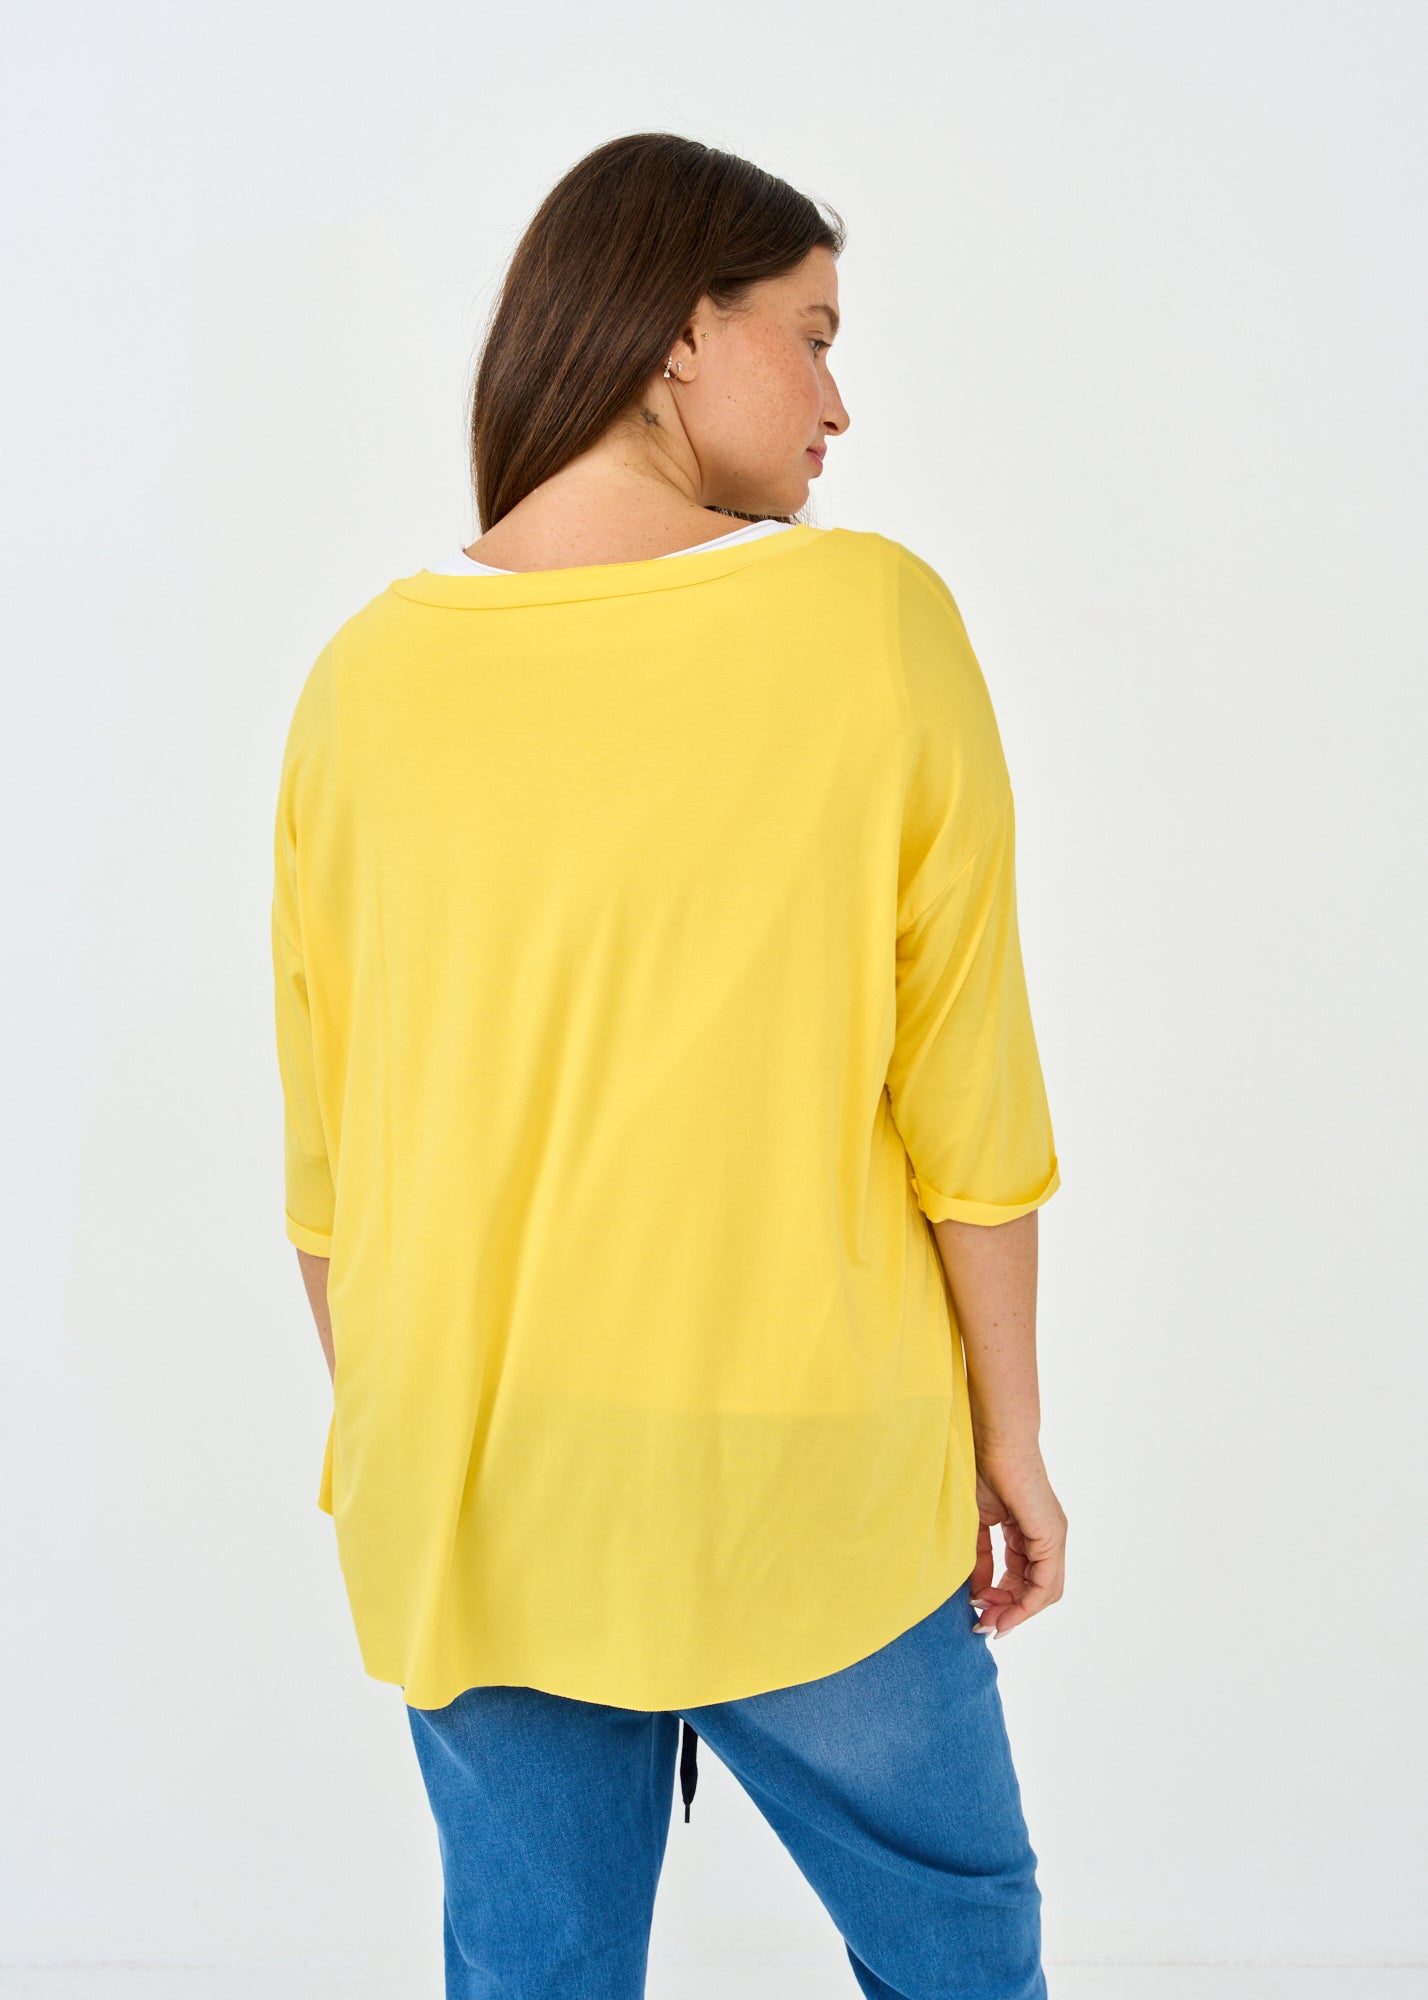 חולצת בסיס 3 4 עם דמוי כיס צהוב